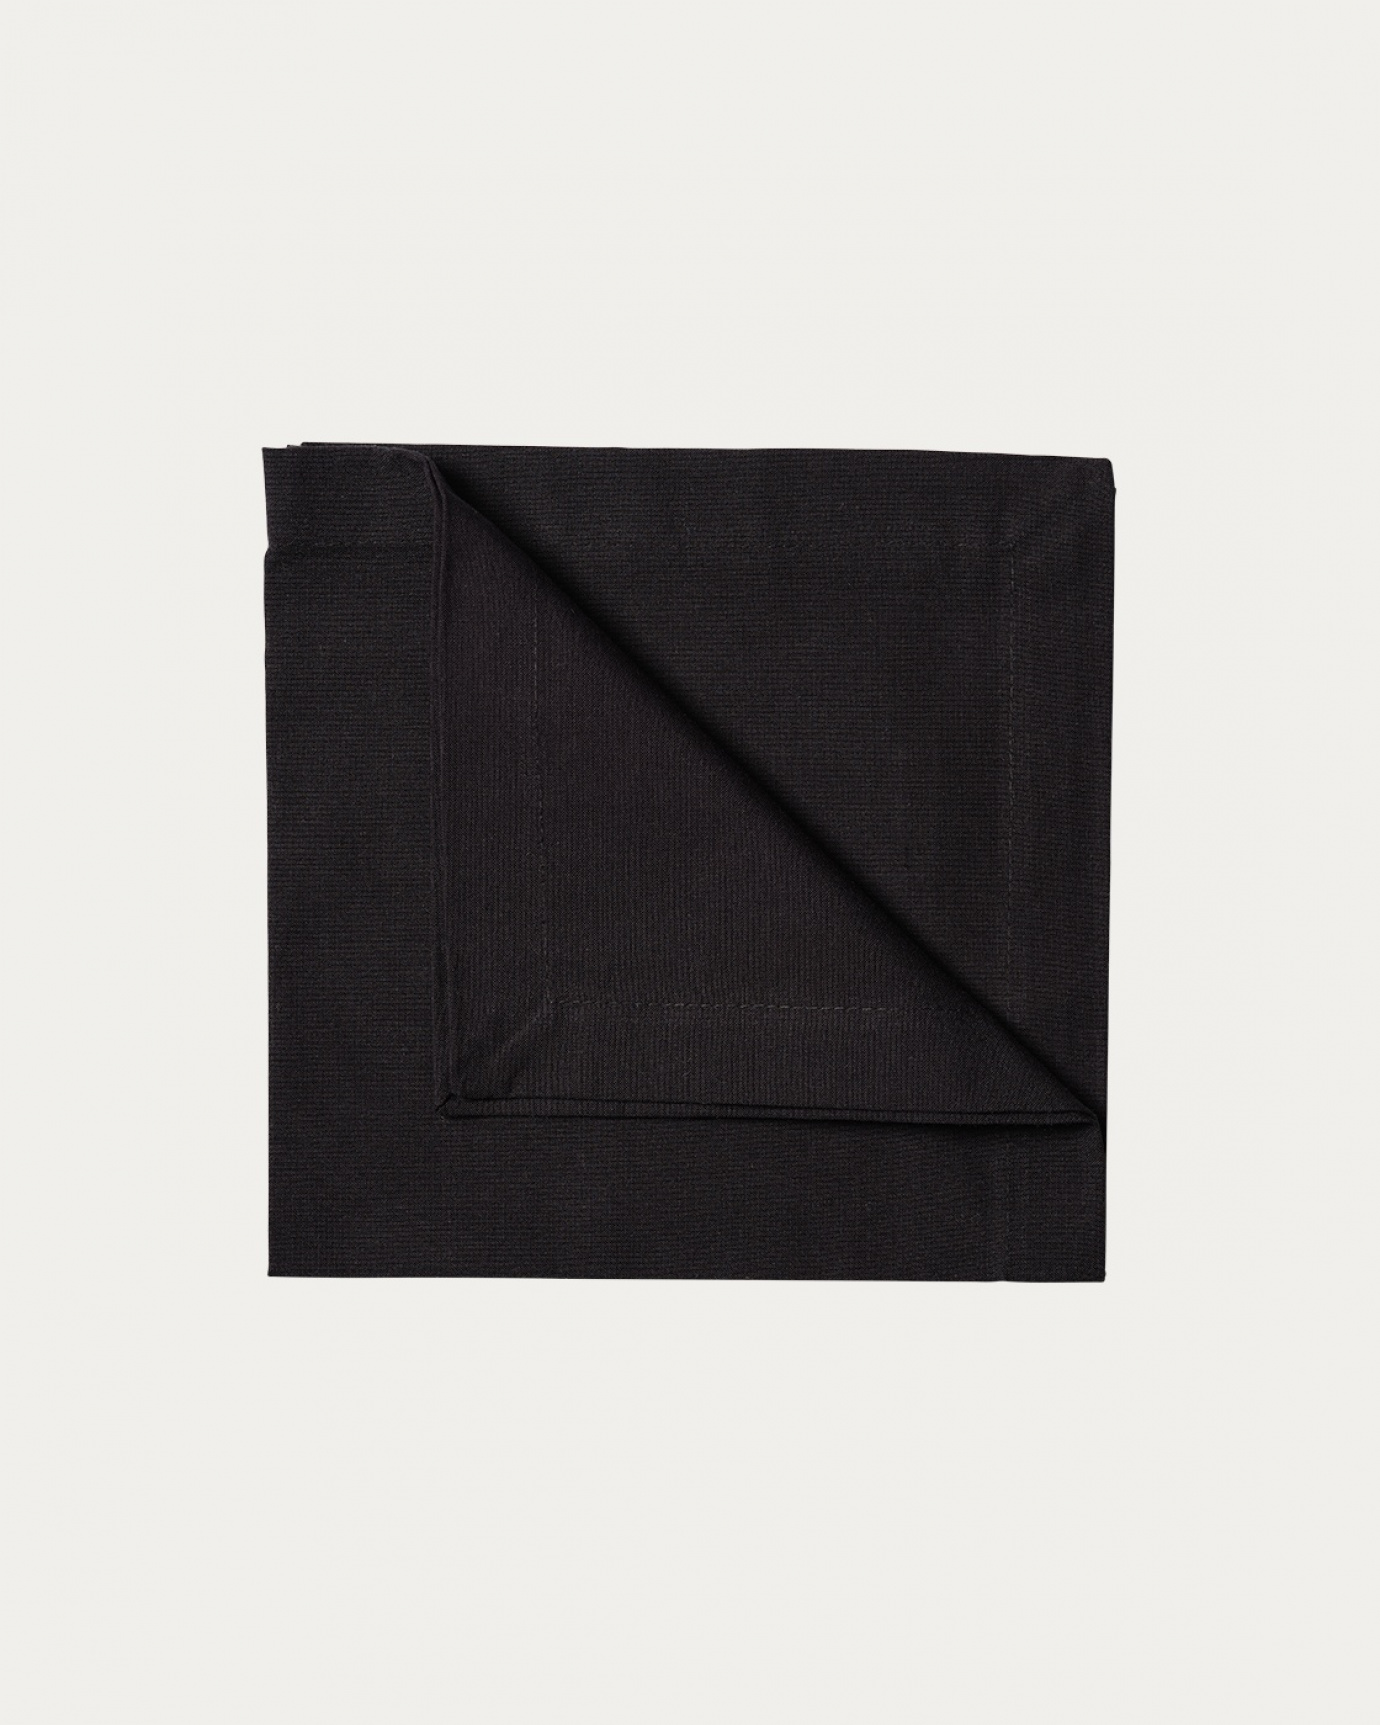 Immagine prodotto nero ROBERT tovagliolo in morbido cotone di LINUM DESIGN. Dimensioni 45x45 cm e venduto in 4-pezzi.